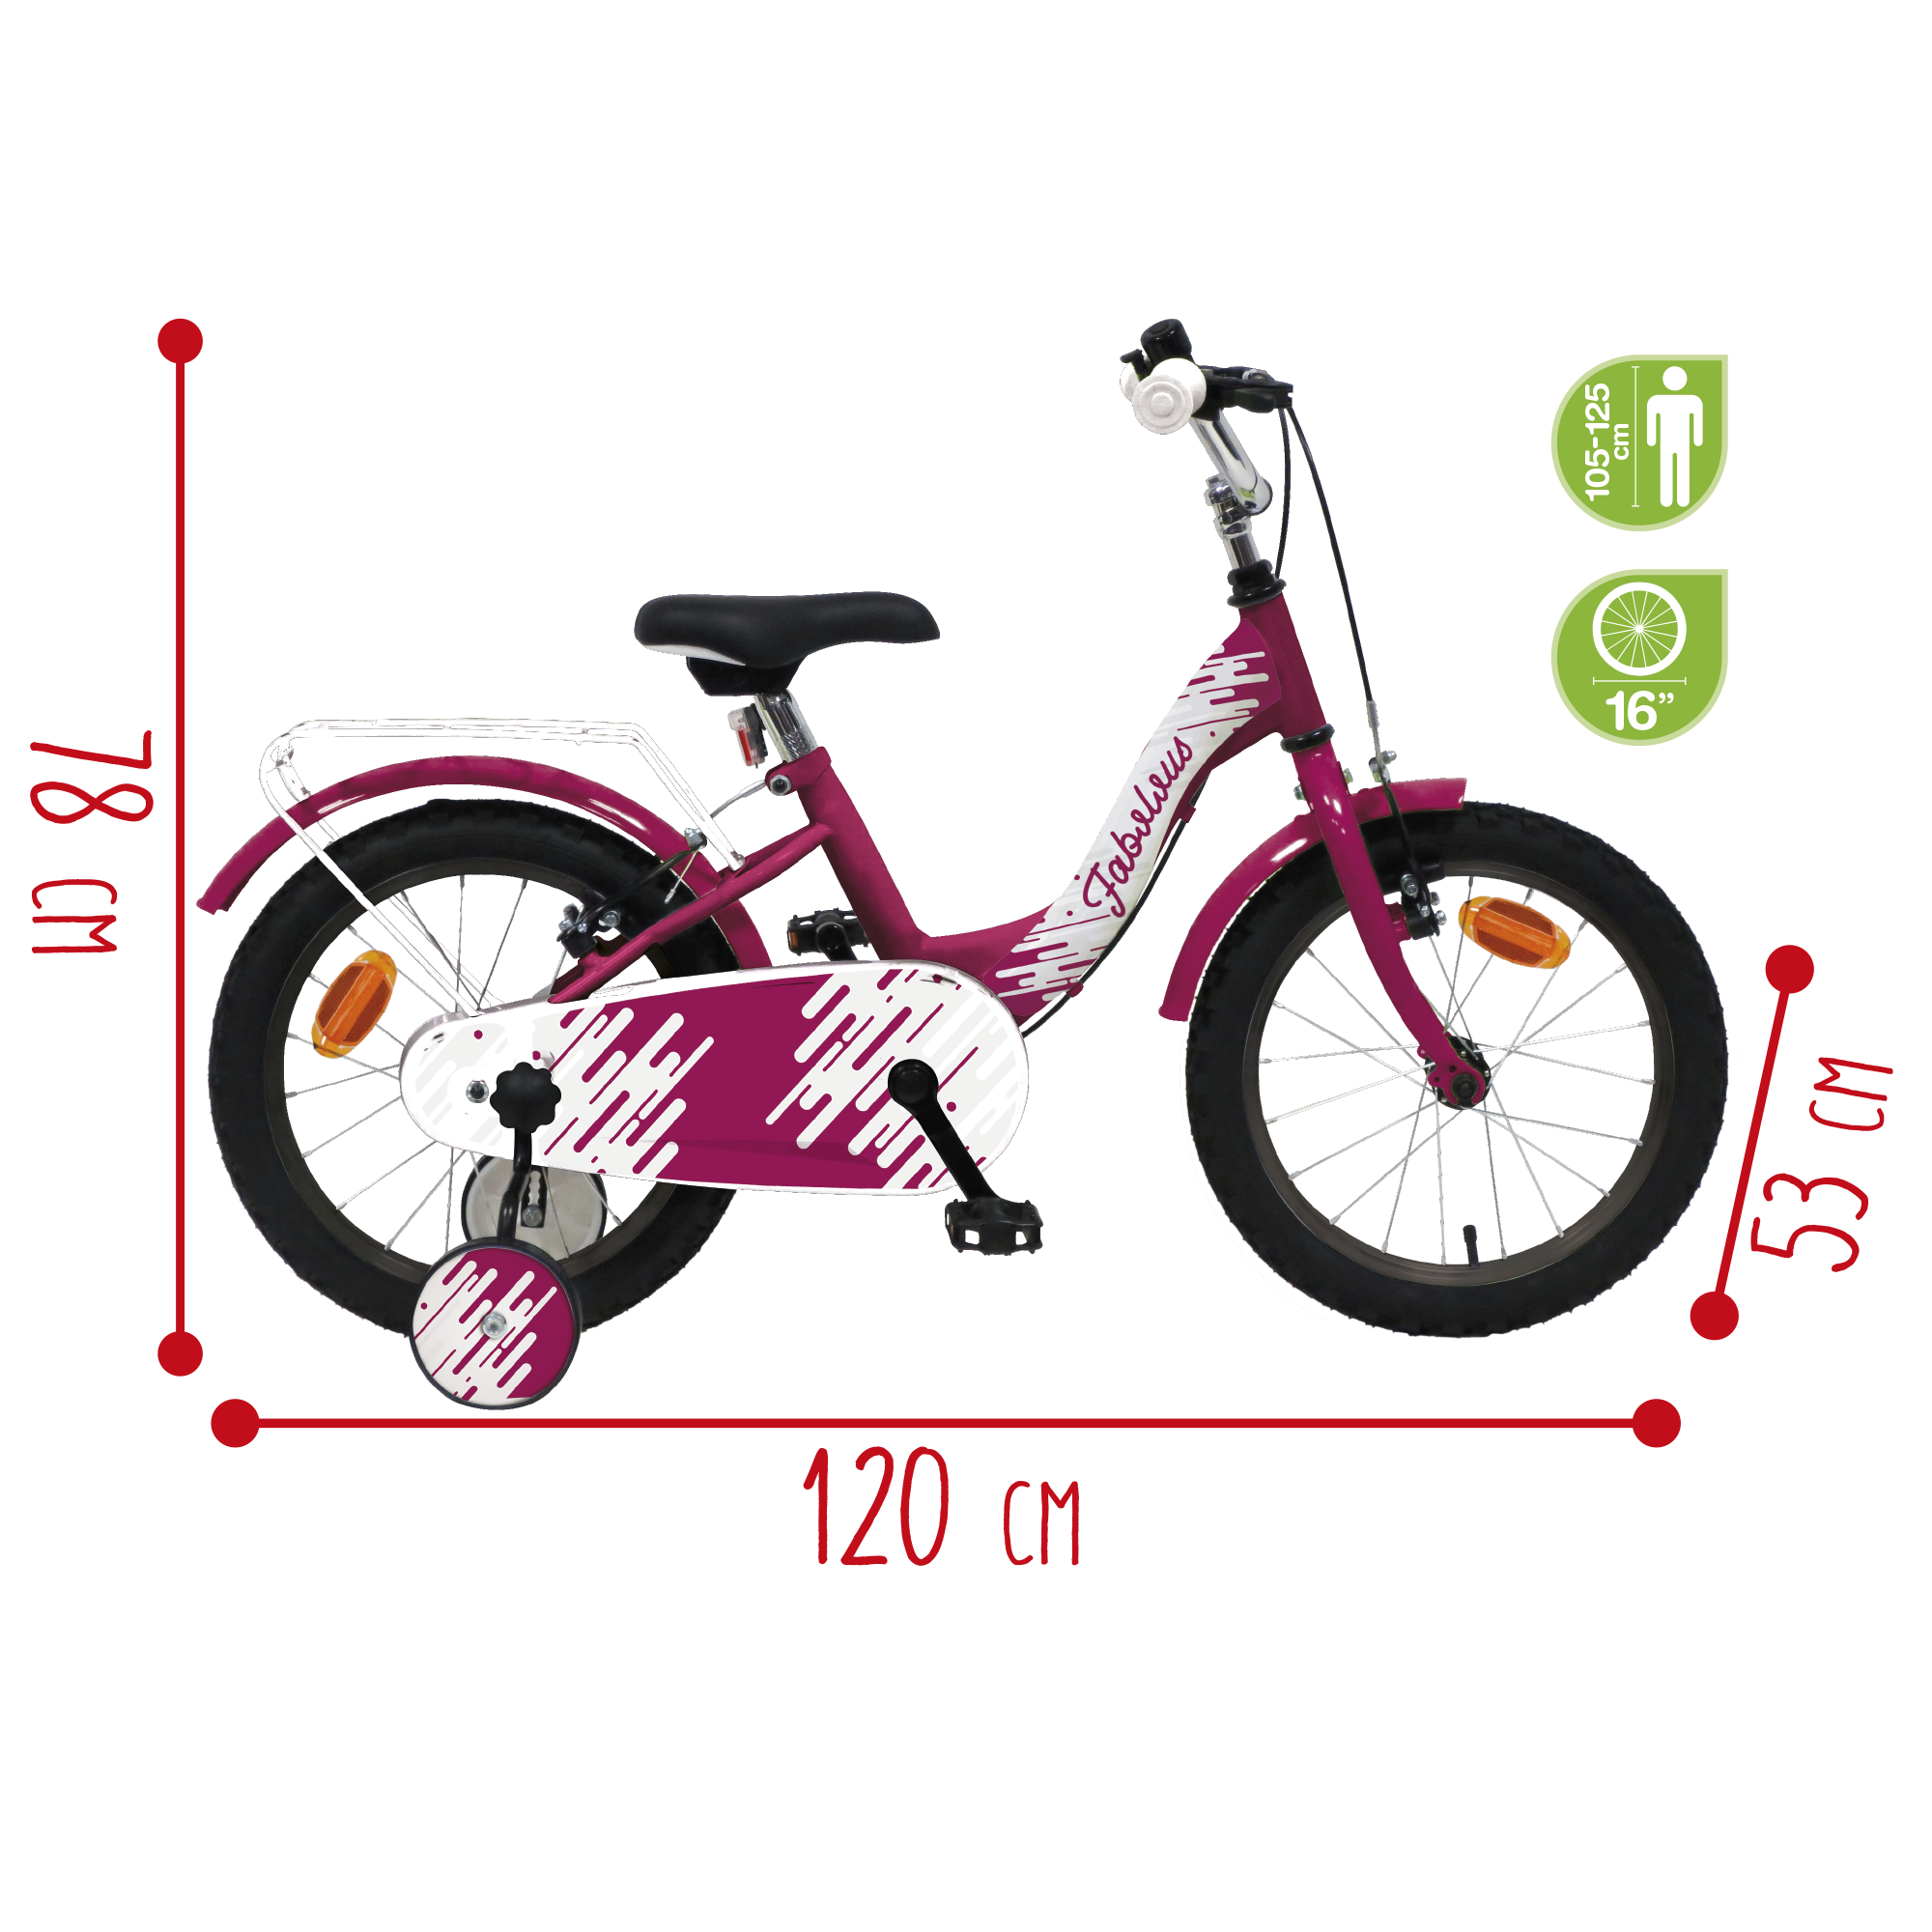 Bicicletta 16'' - luxury dallo stile sportivo - magenta - sistema a 2 freni v-brake - struttura in acciaio - adatta per  bambini dai 8-12 anni - SUN&SPORT